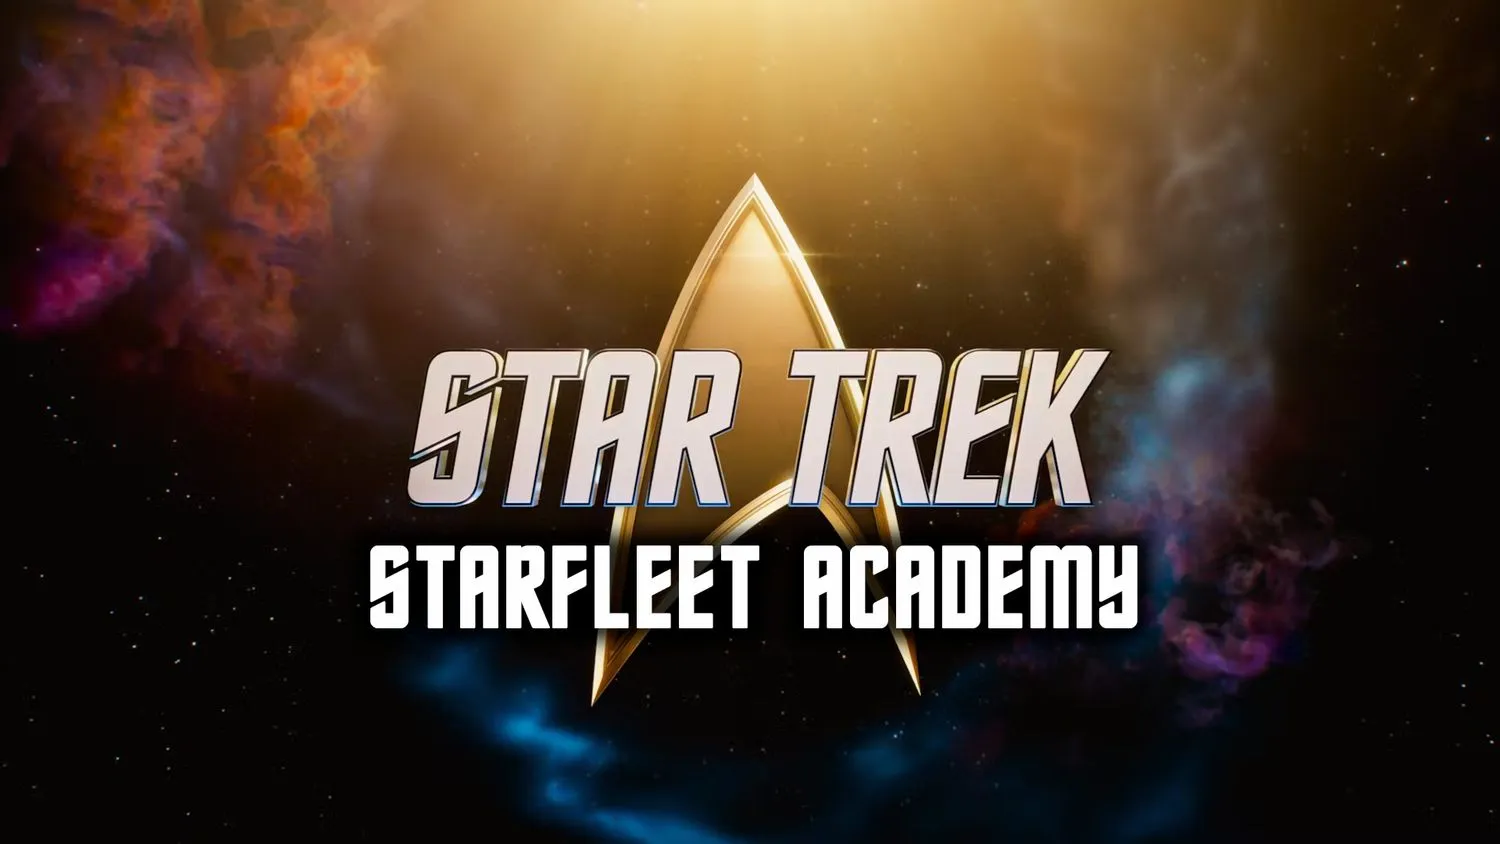 Mehr über den Artikel erfahren Alles, was wir über „Star Trek: Starfleet Academy“ wissen